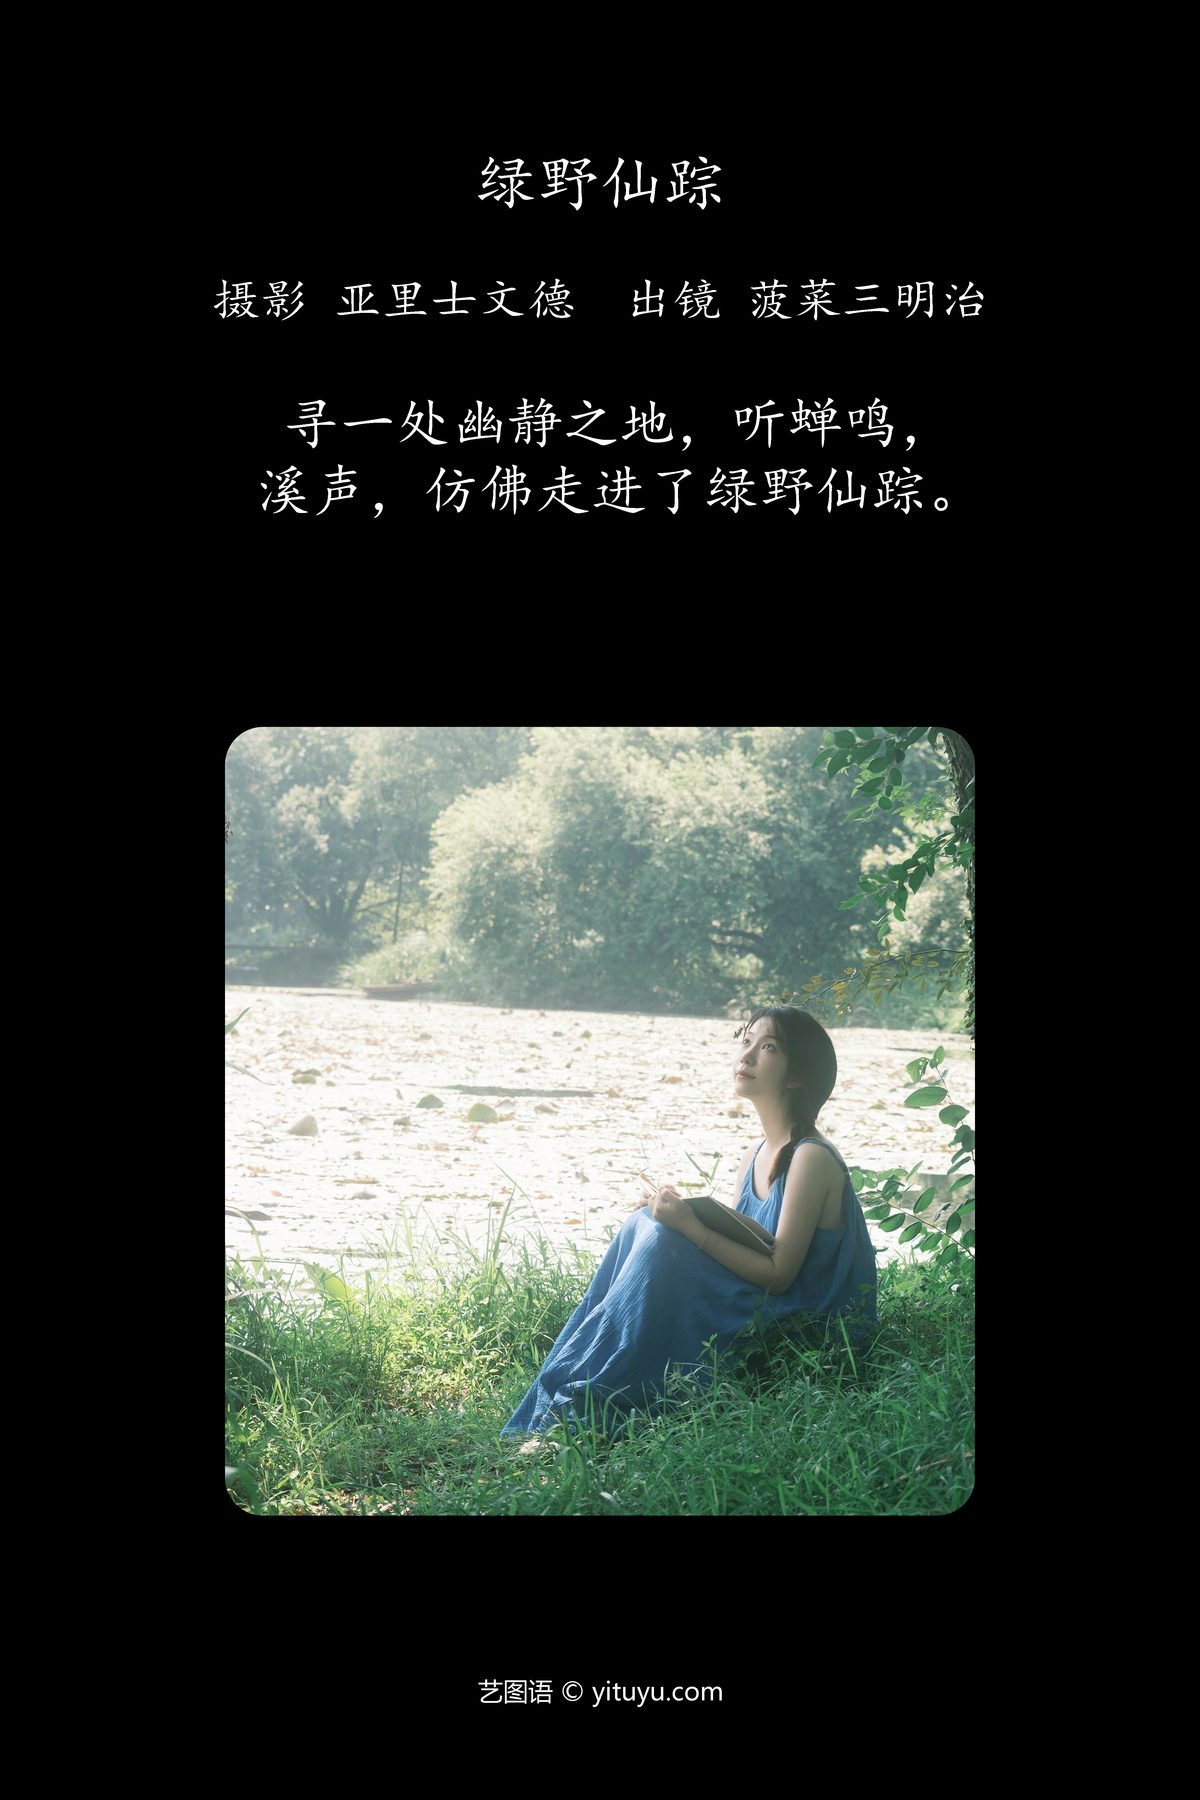 YiTuYu艺图语 Vol 4594 Bo Cai San Ming Zhi 0001 0677753941.jpg